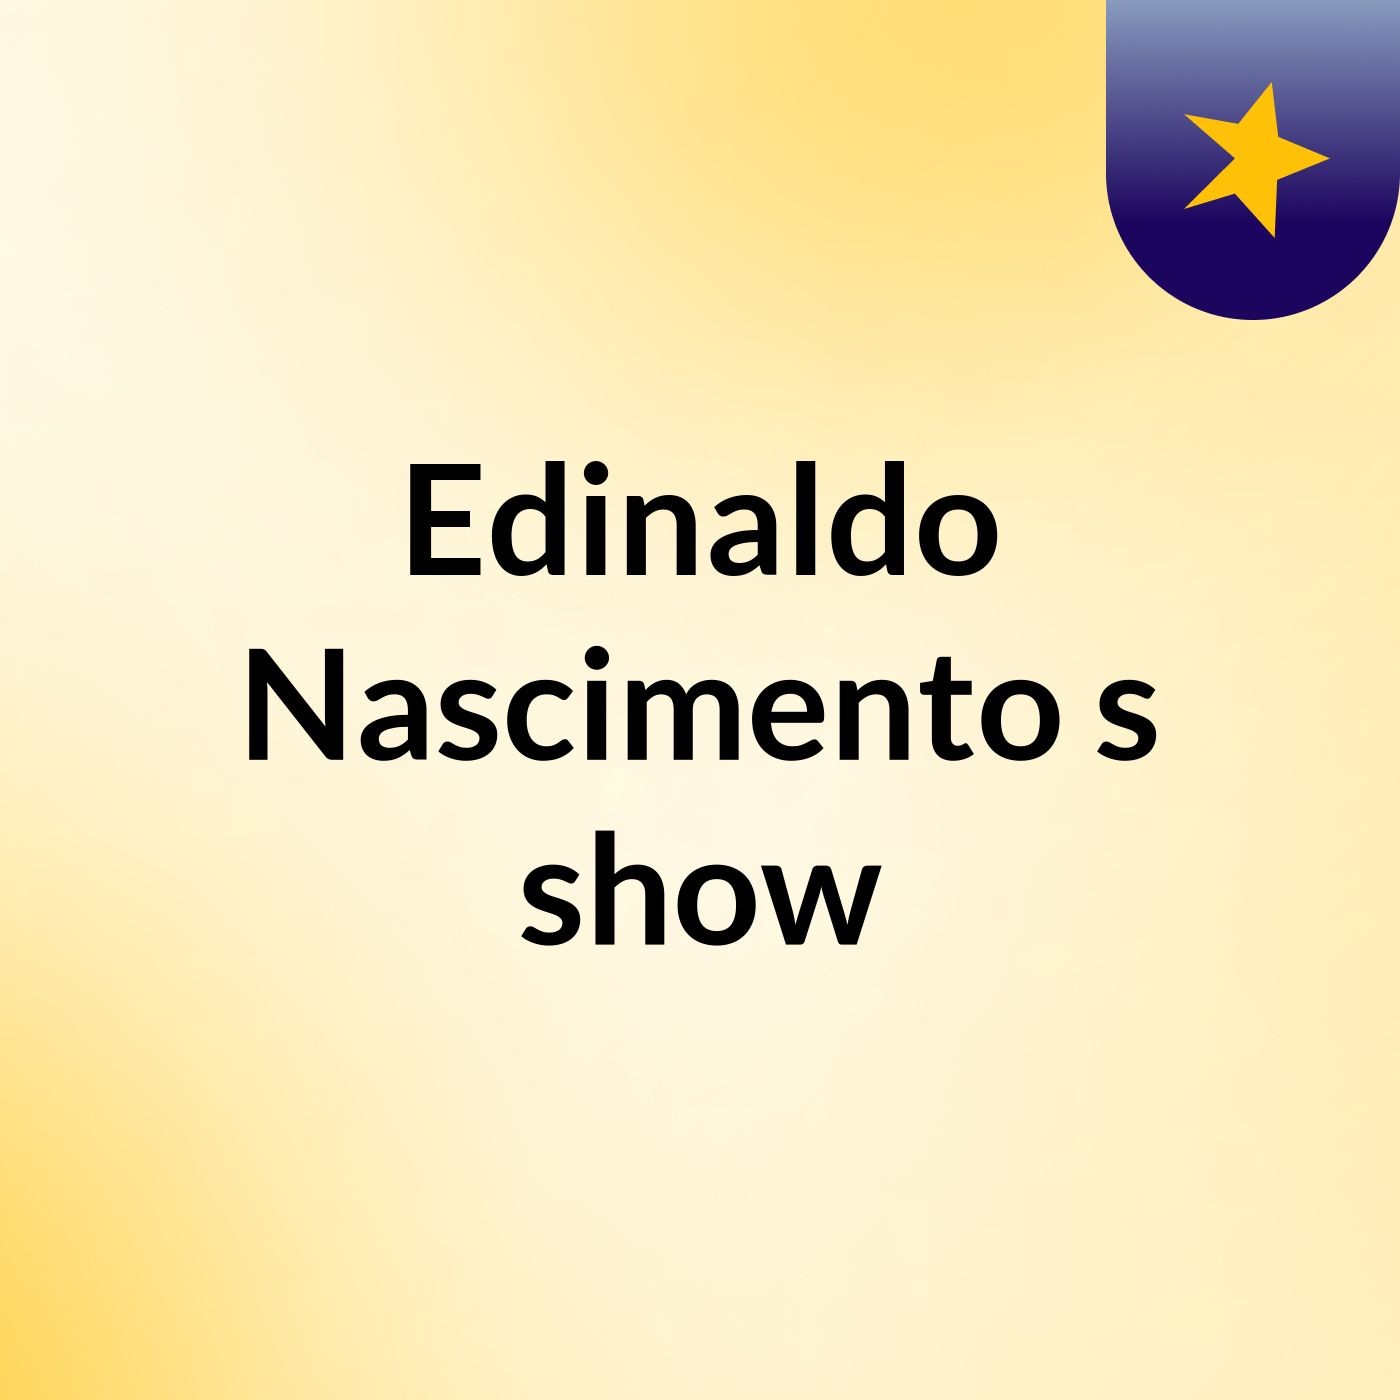 Edinaldo Nascimento's show